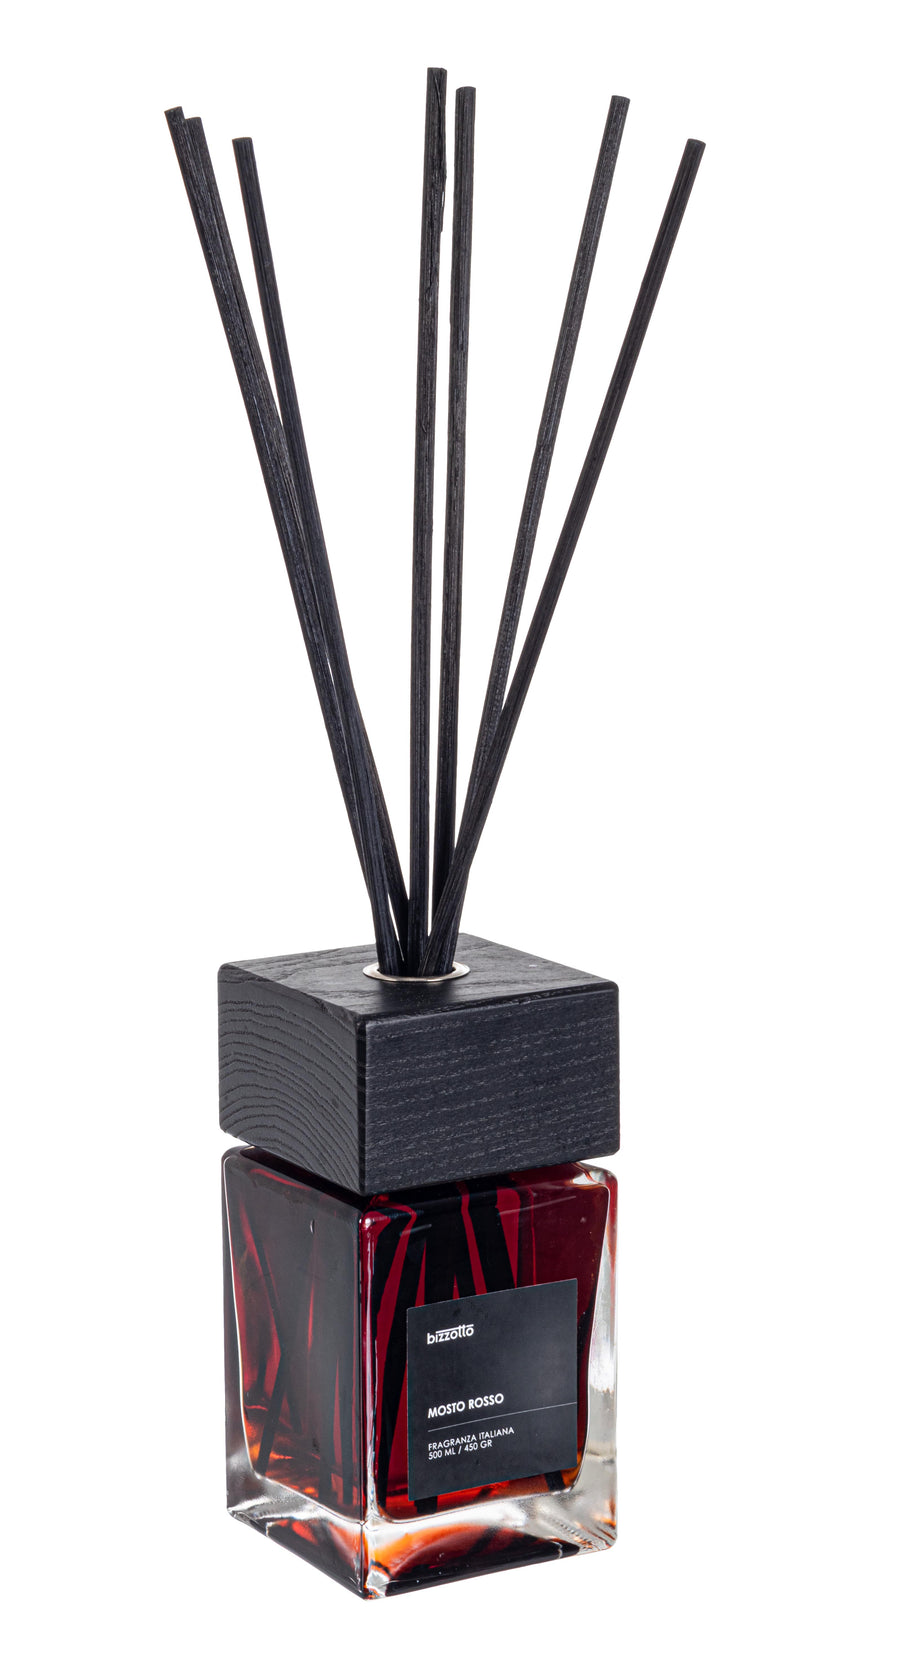 Contenitore in vetro con tappo e bastoncini in legno, contenente fragranza mosto rosso da 500 ML